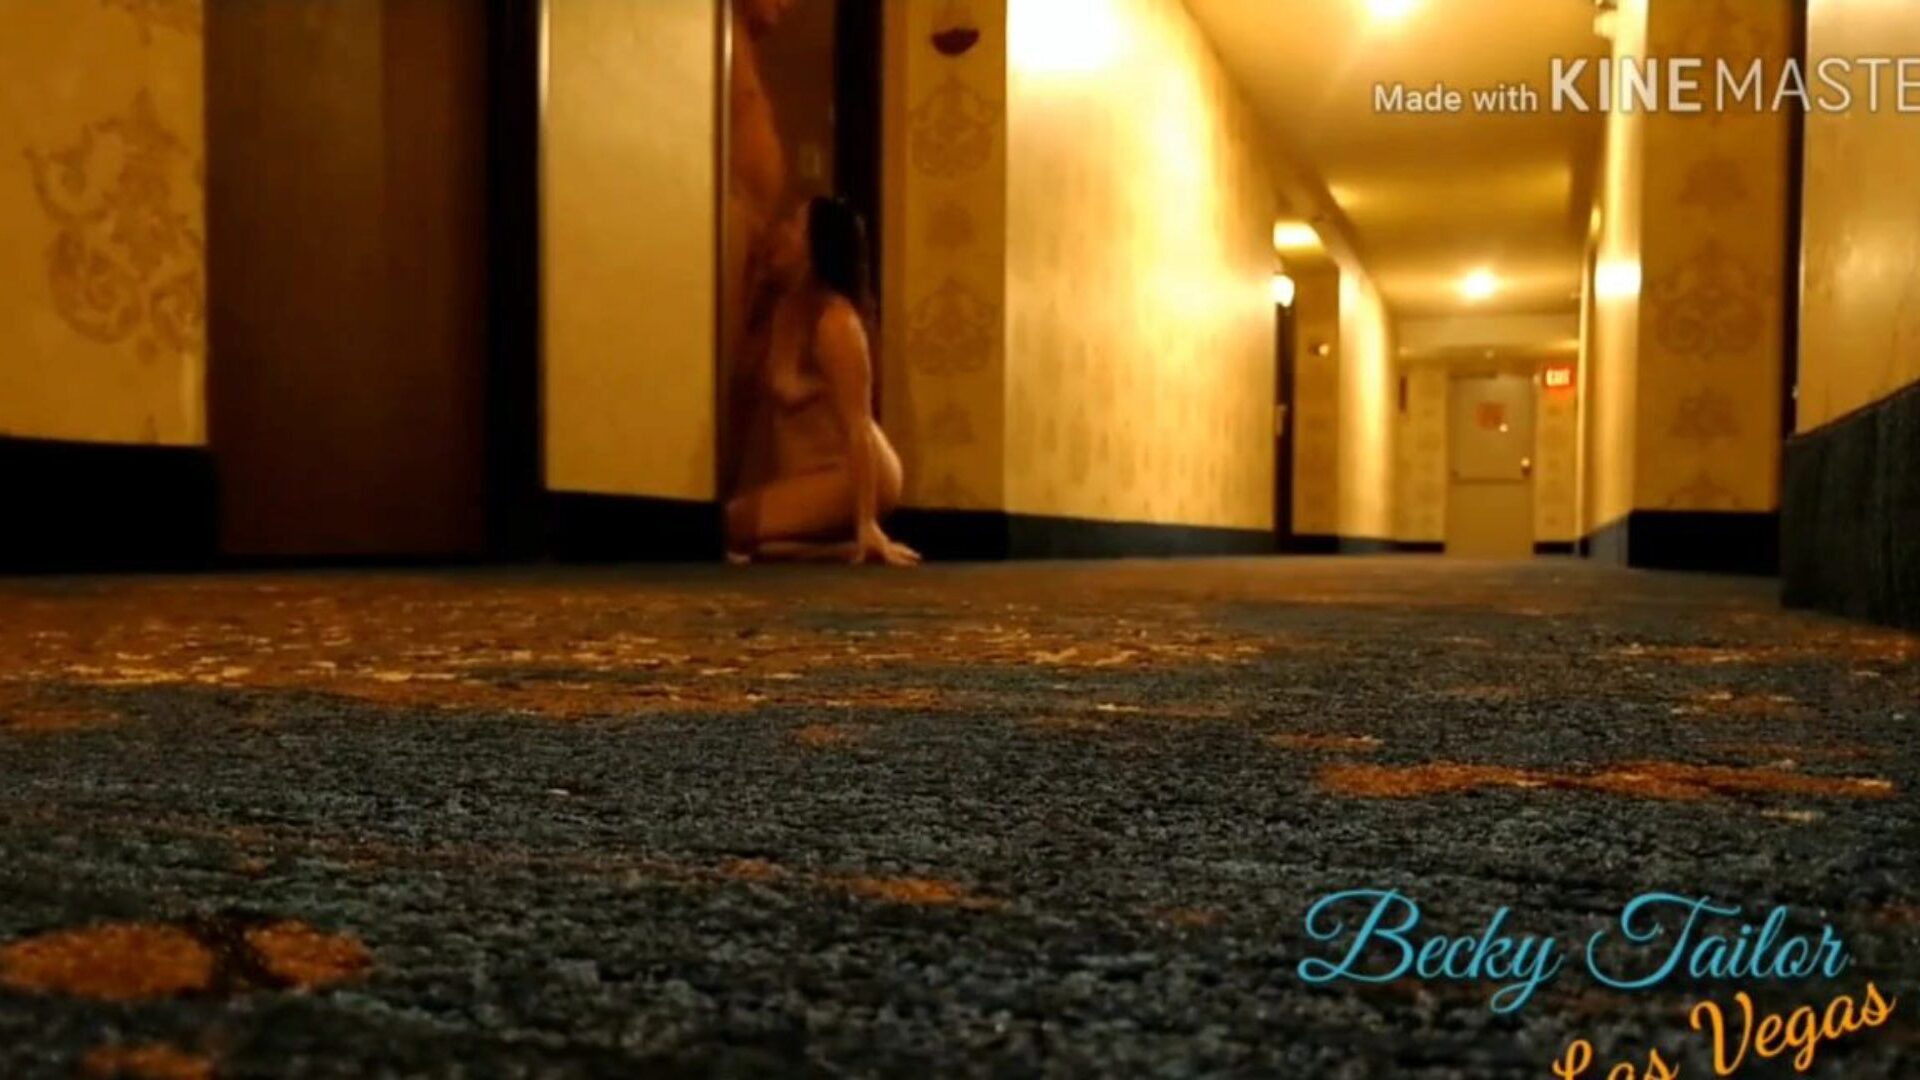 jævla kone i vegas hotel hallway, gratis porno 0b: xhamster se jævla kone i vegas hotell hallway klipp på xhamster, den mest utmerkede hd sex tube websiden med tonnevis av gratis mor til mor jeg vil knulle voyeur og skjult kamera pornofilmer